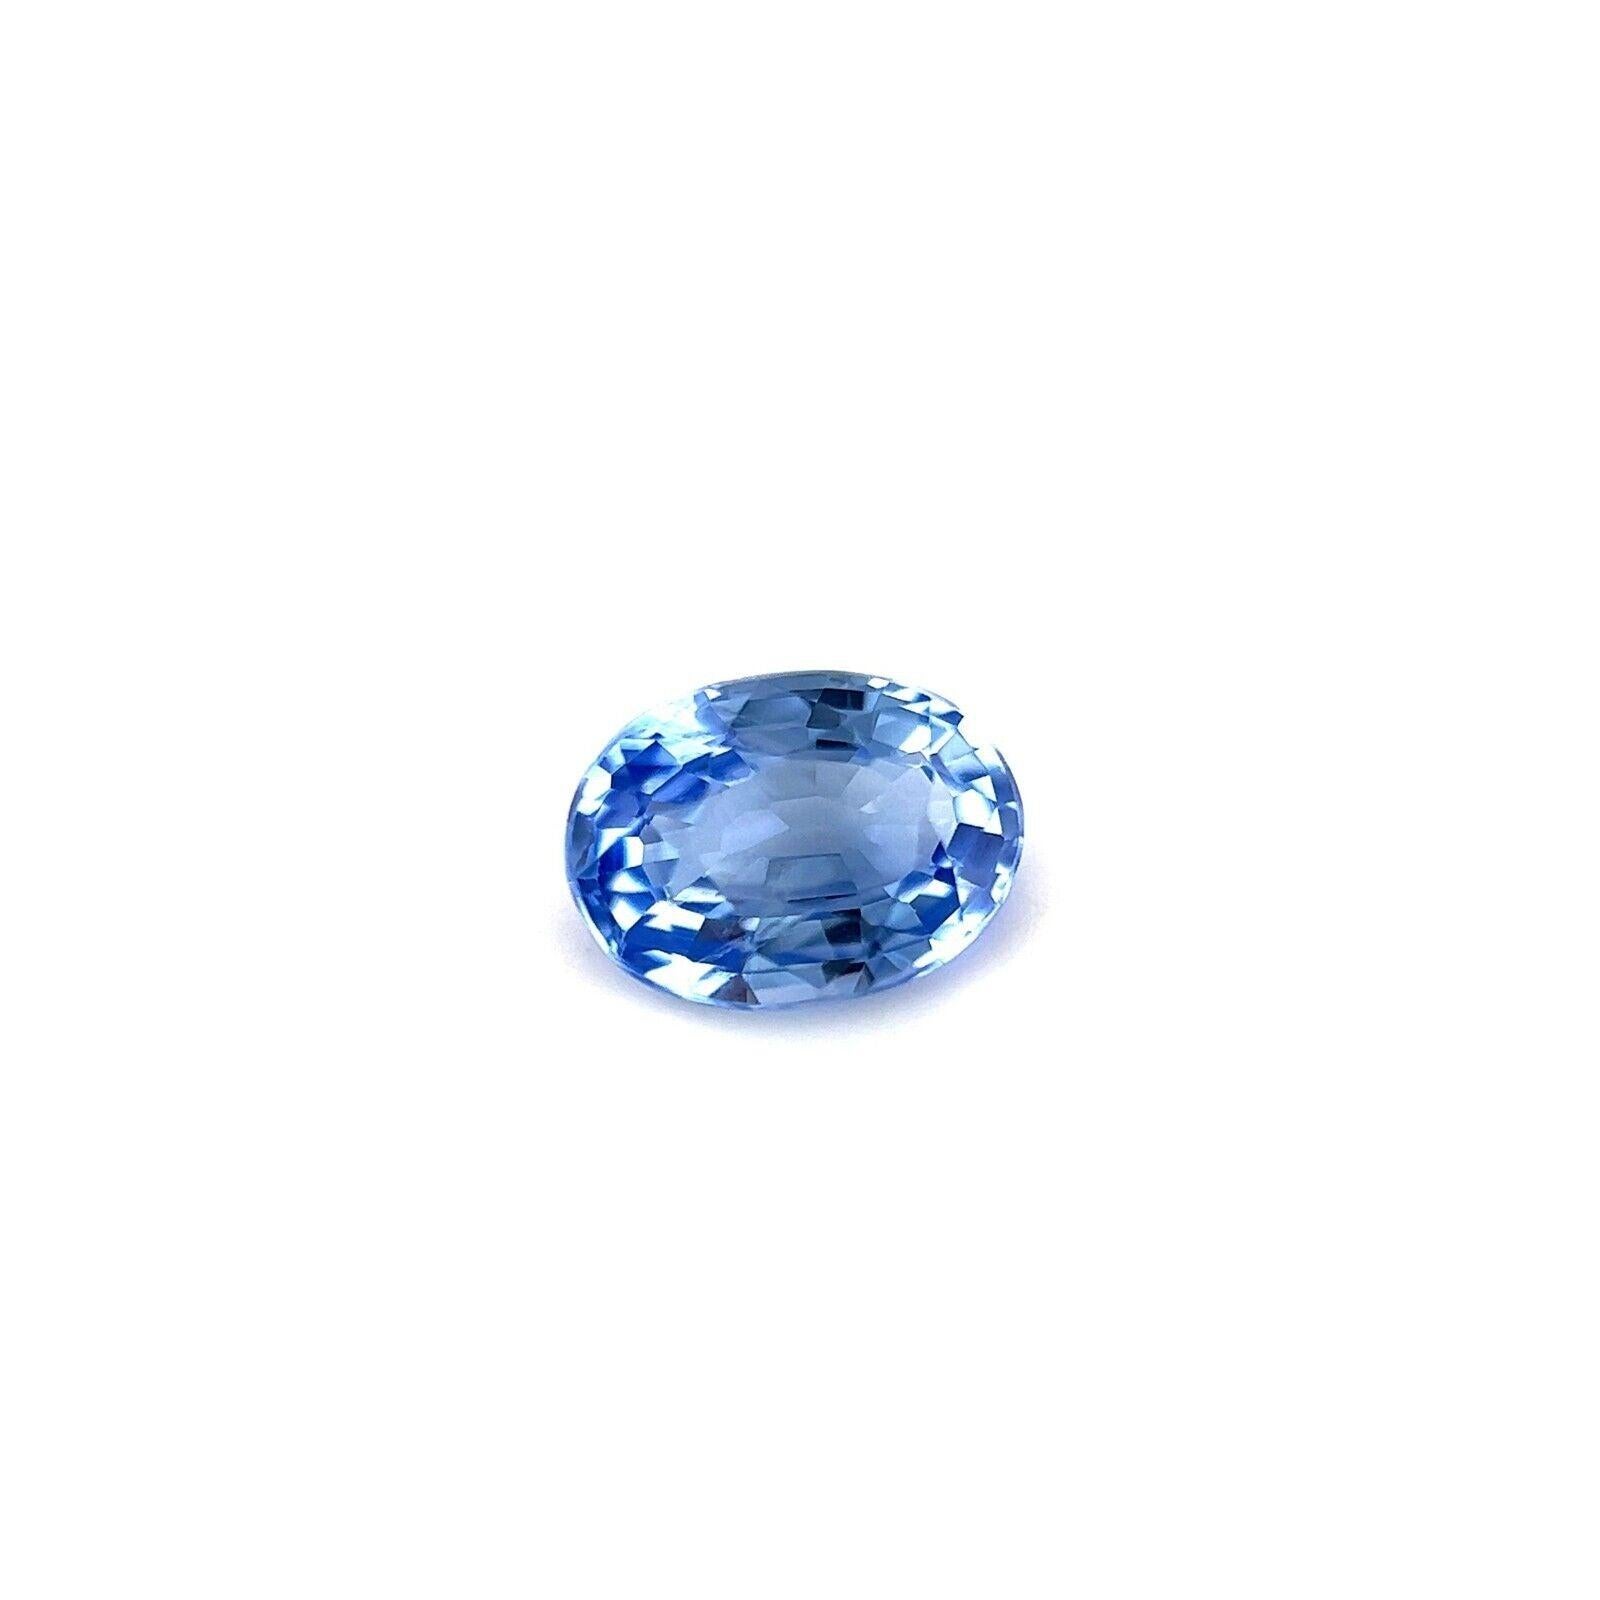 Fine Blue Ceylon Sapphire 0.85ct Oval Cut Rare Loose Gemstone 6.5x4.7mm VVS

Fine Light Blue Ceylon Sapphire Gemstone (saphir de Ceylan bleu clair).
0,85 carat avec une belle couleur bleu clair et une excellente clarté, une pierre très propre, VVS.